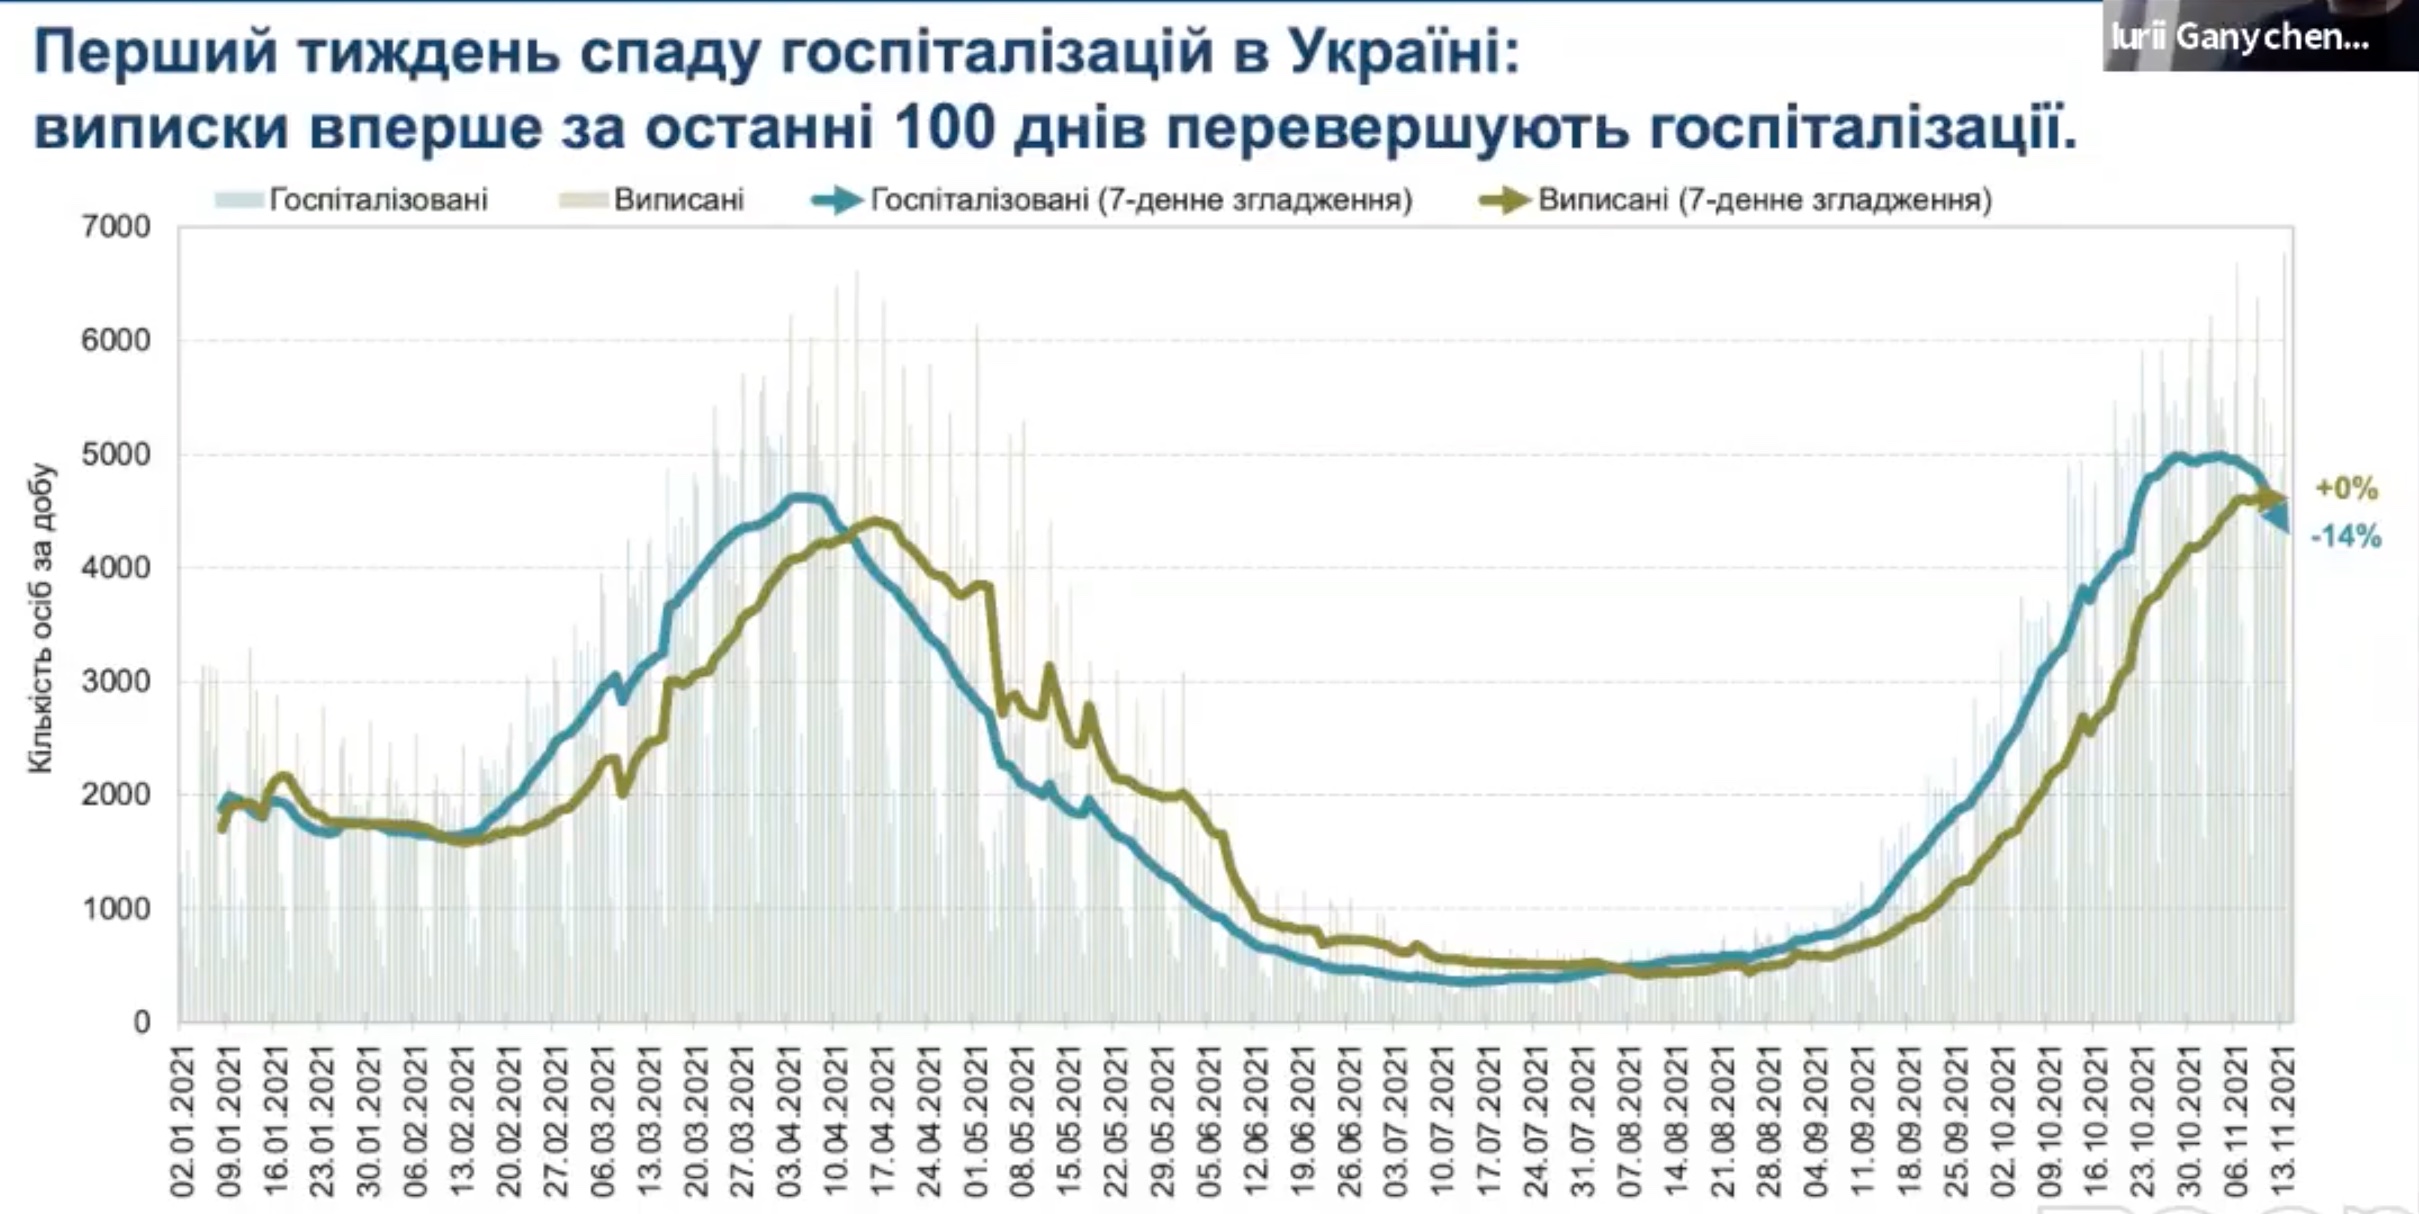 Коронавирус. В Украине фиксируется неустойчивый тренд к спаду заболеваемости – КШЭ